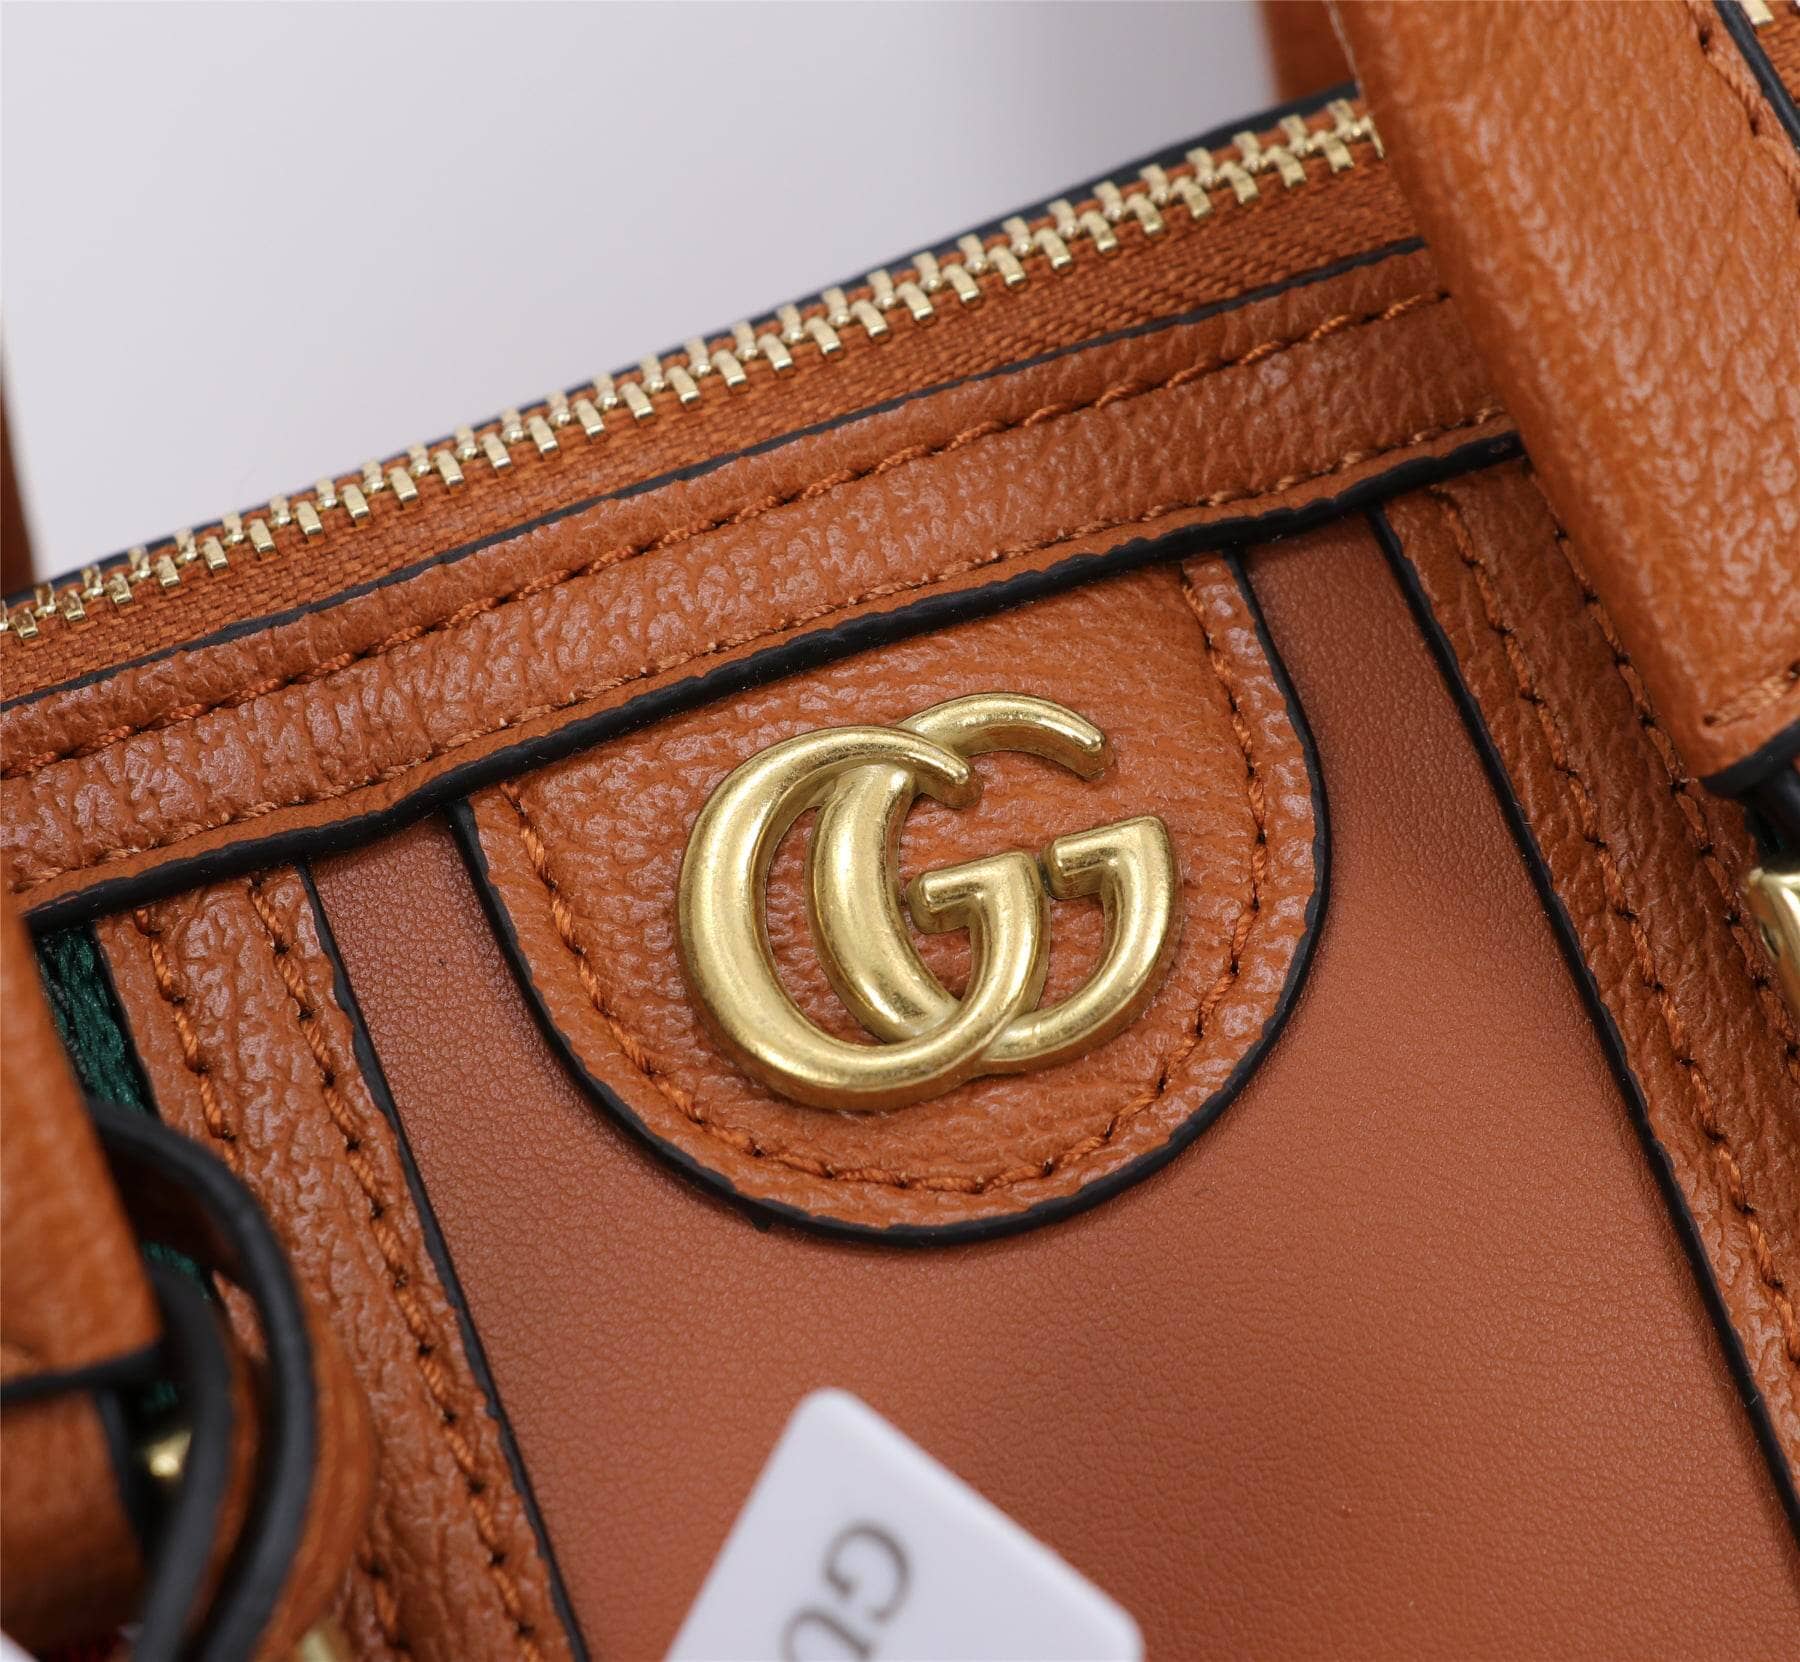 GG835 Handbag with Sling